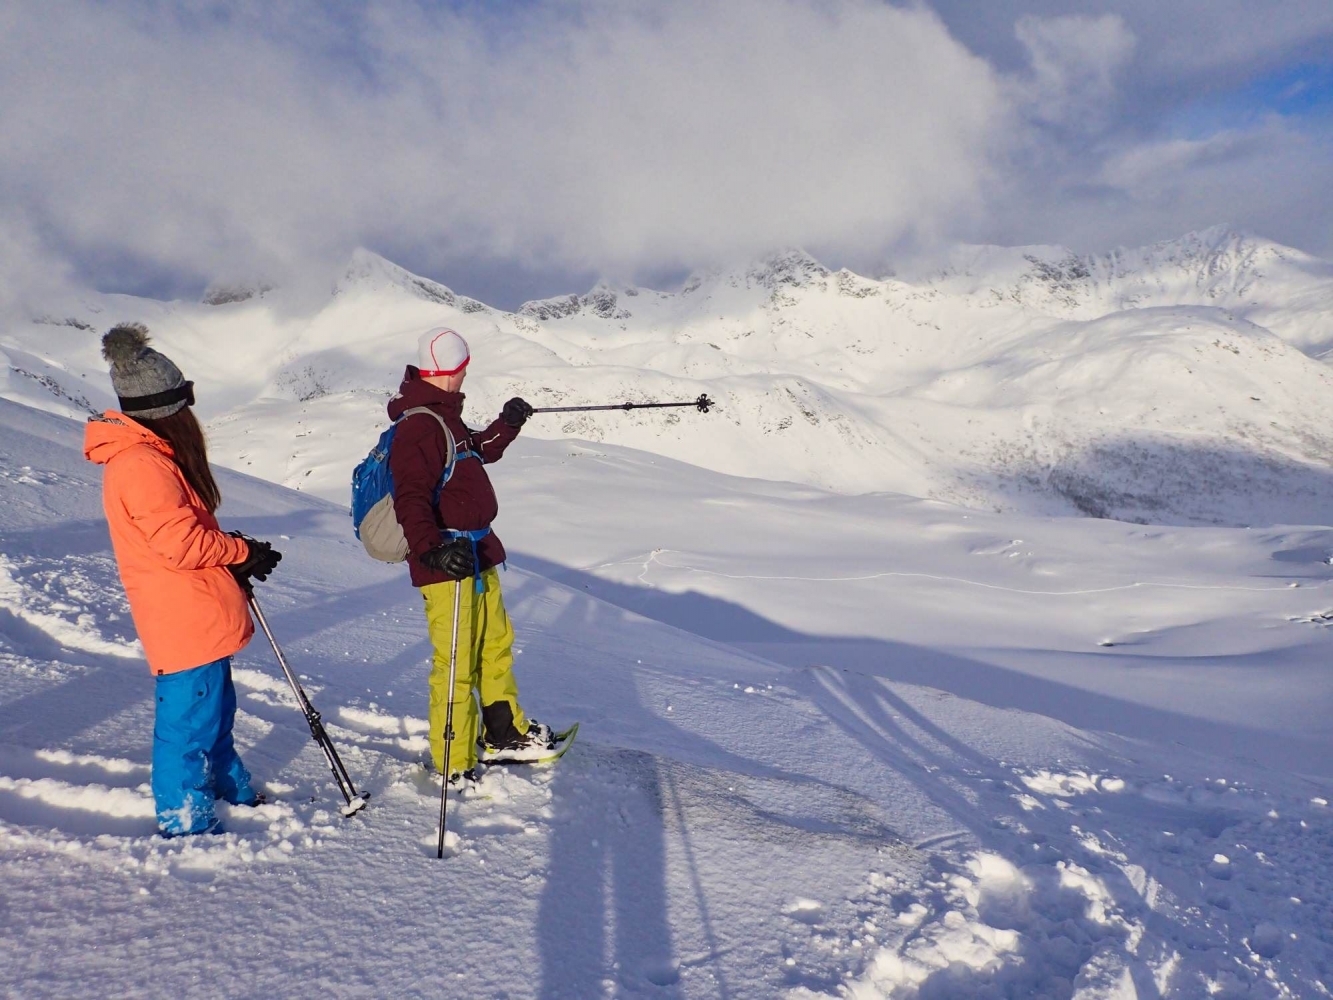 Scenic snowshoe trip over Tromsø